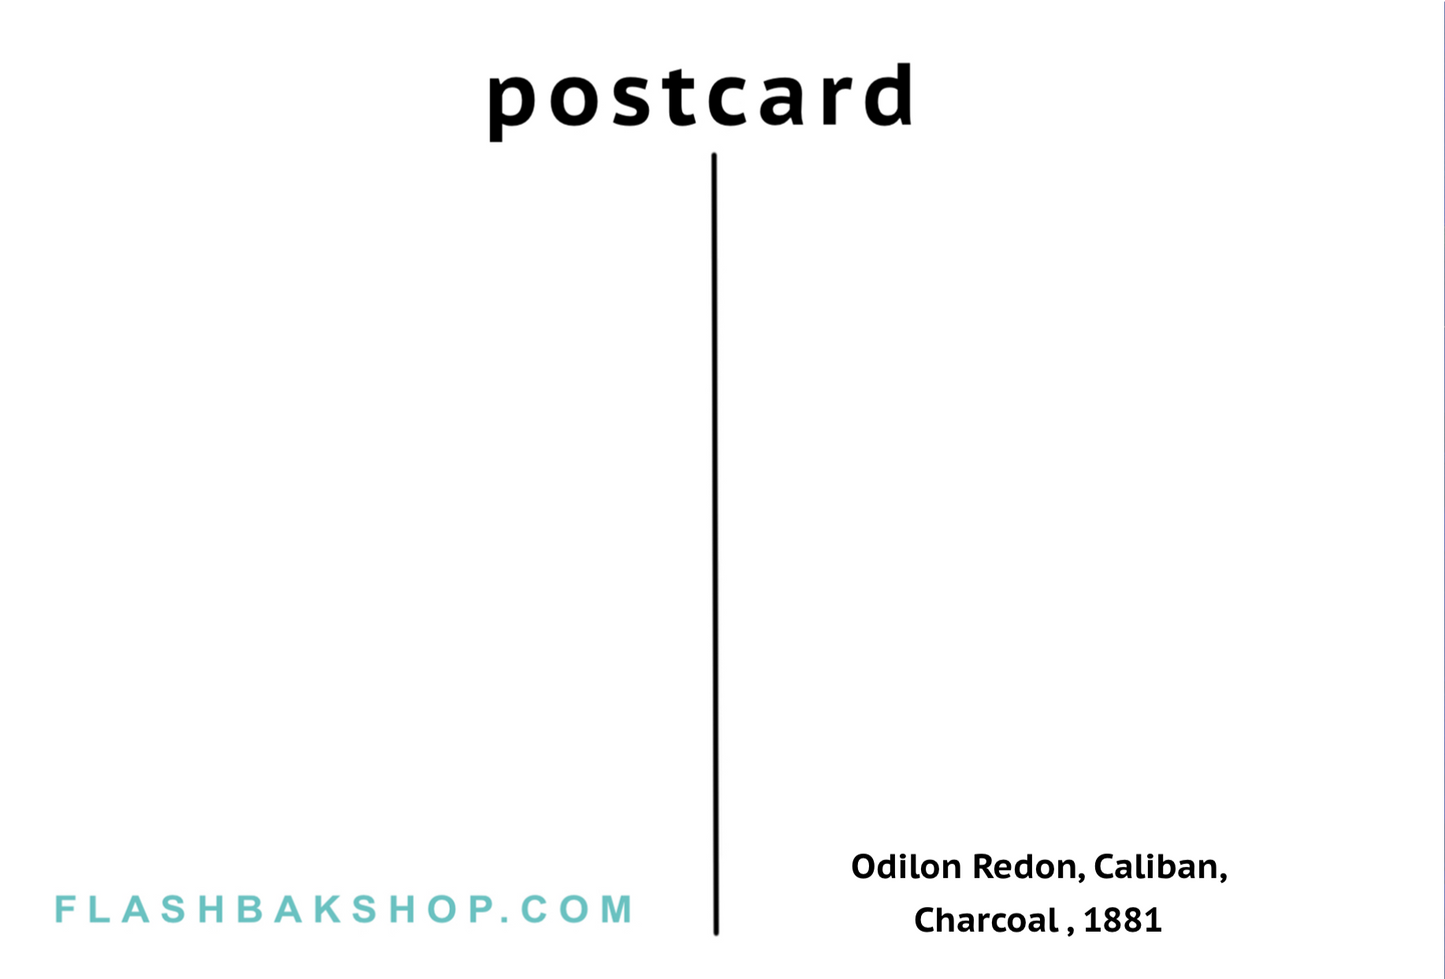 Caliban by Odilon Redon, 1881 - Postcard